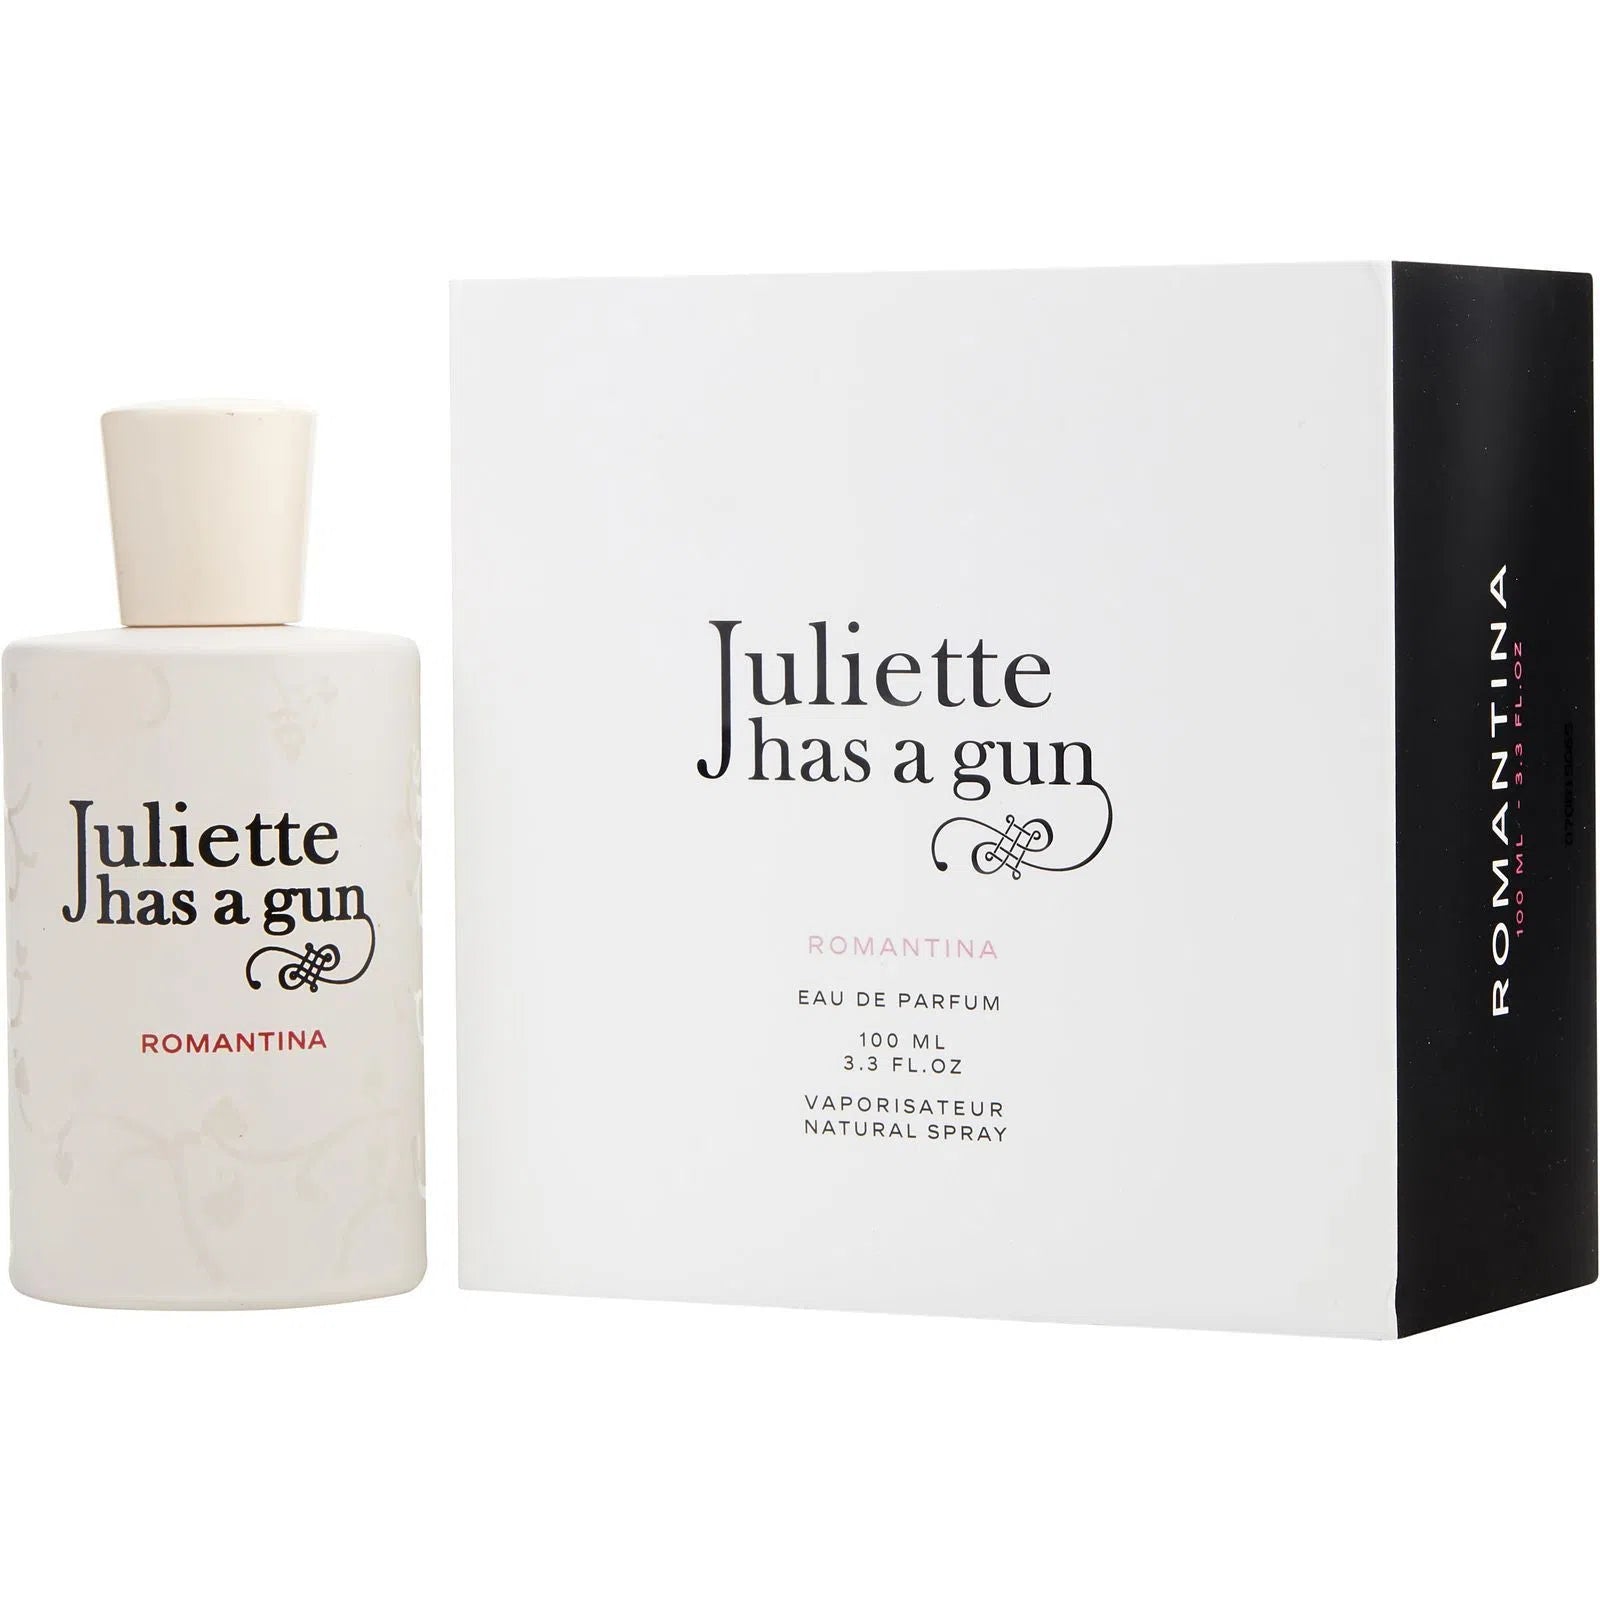 Perfume Juliette Has a Gun Romantina EDP (W) / 100 ml - 3770000002843- Prive Perfumes Honduras